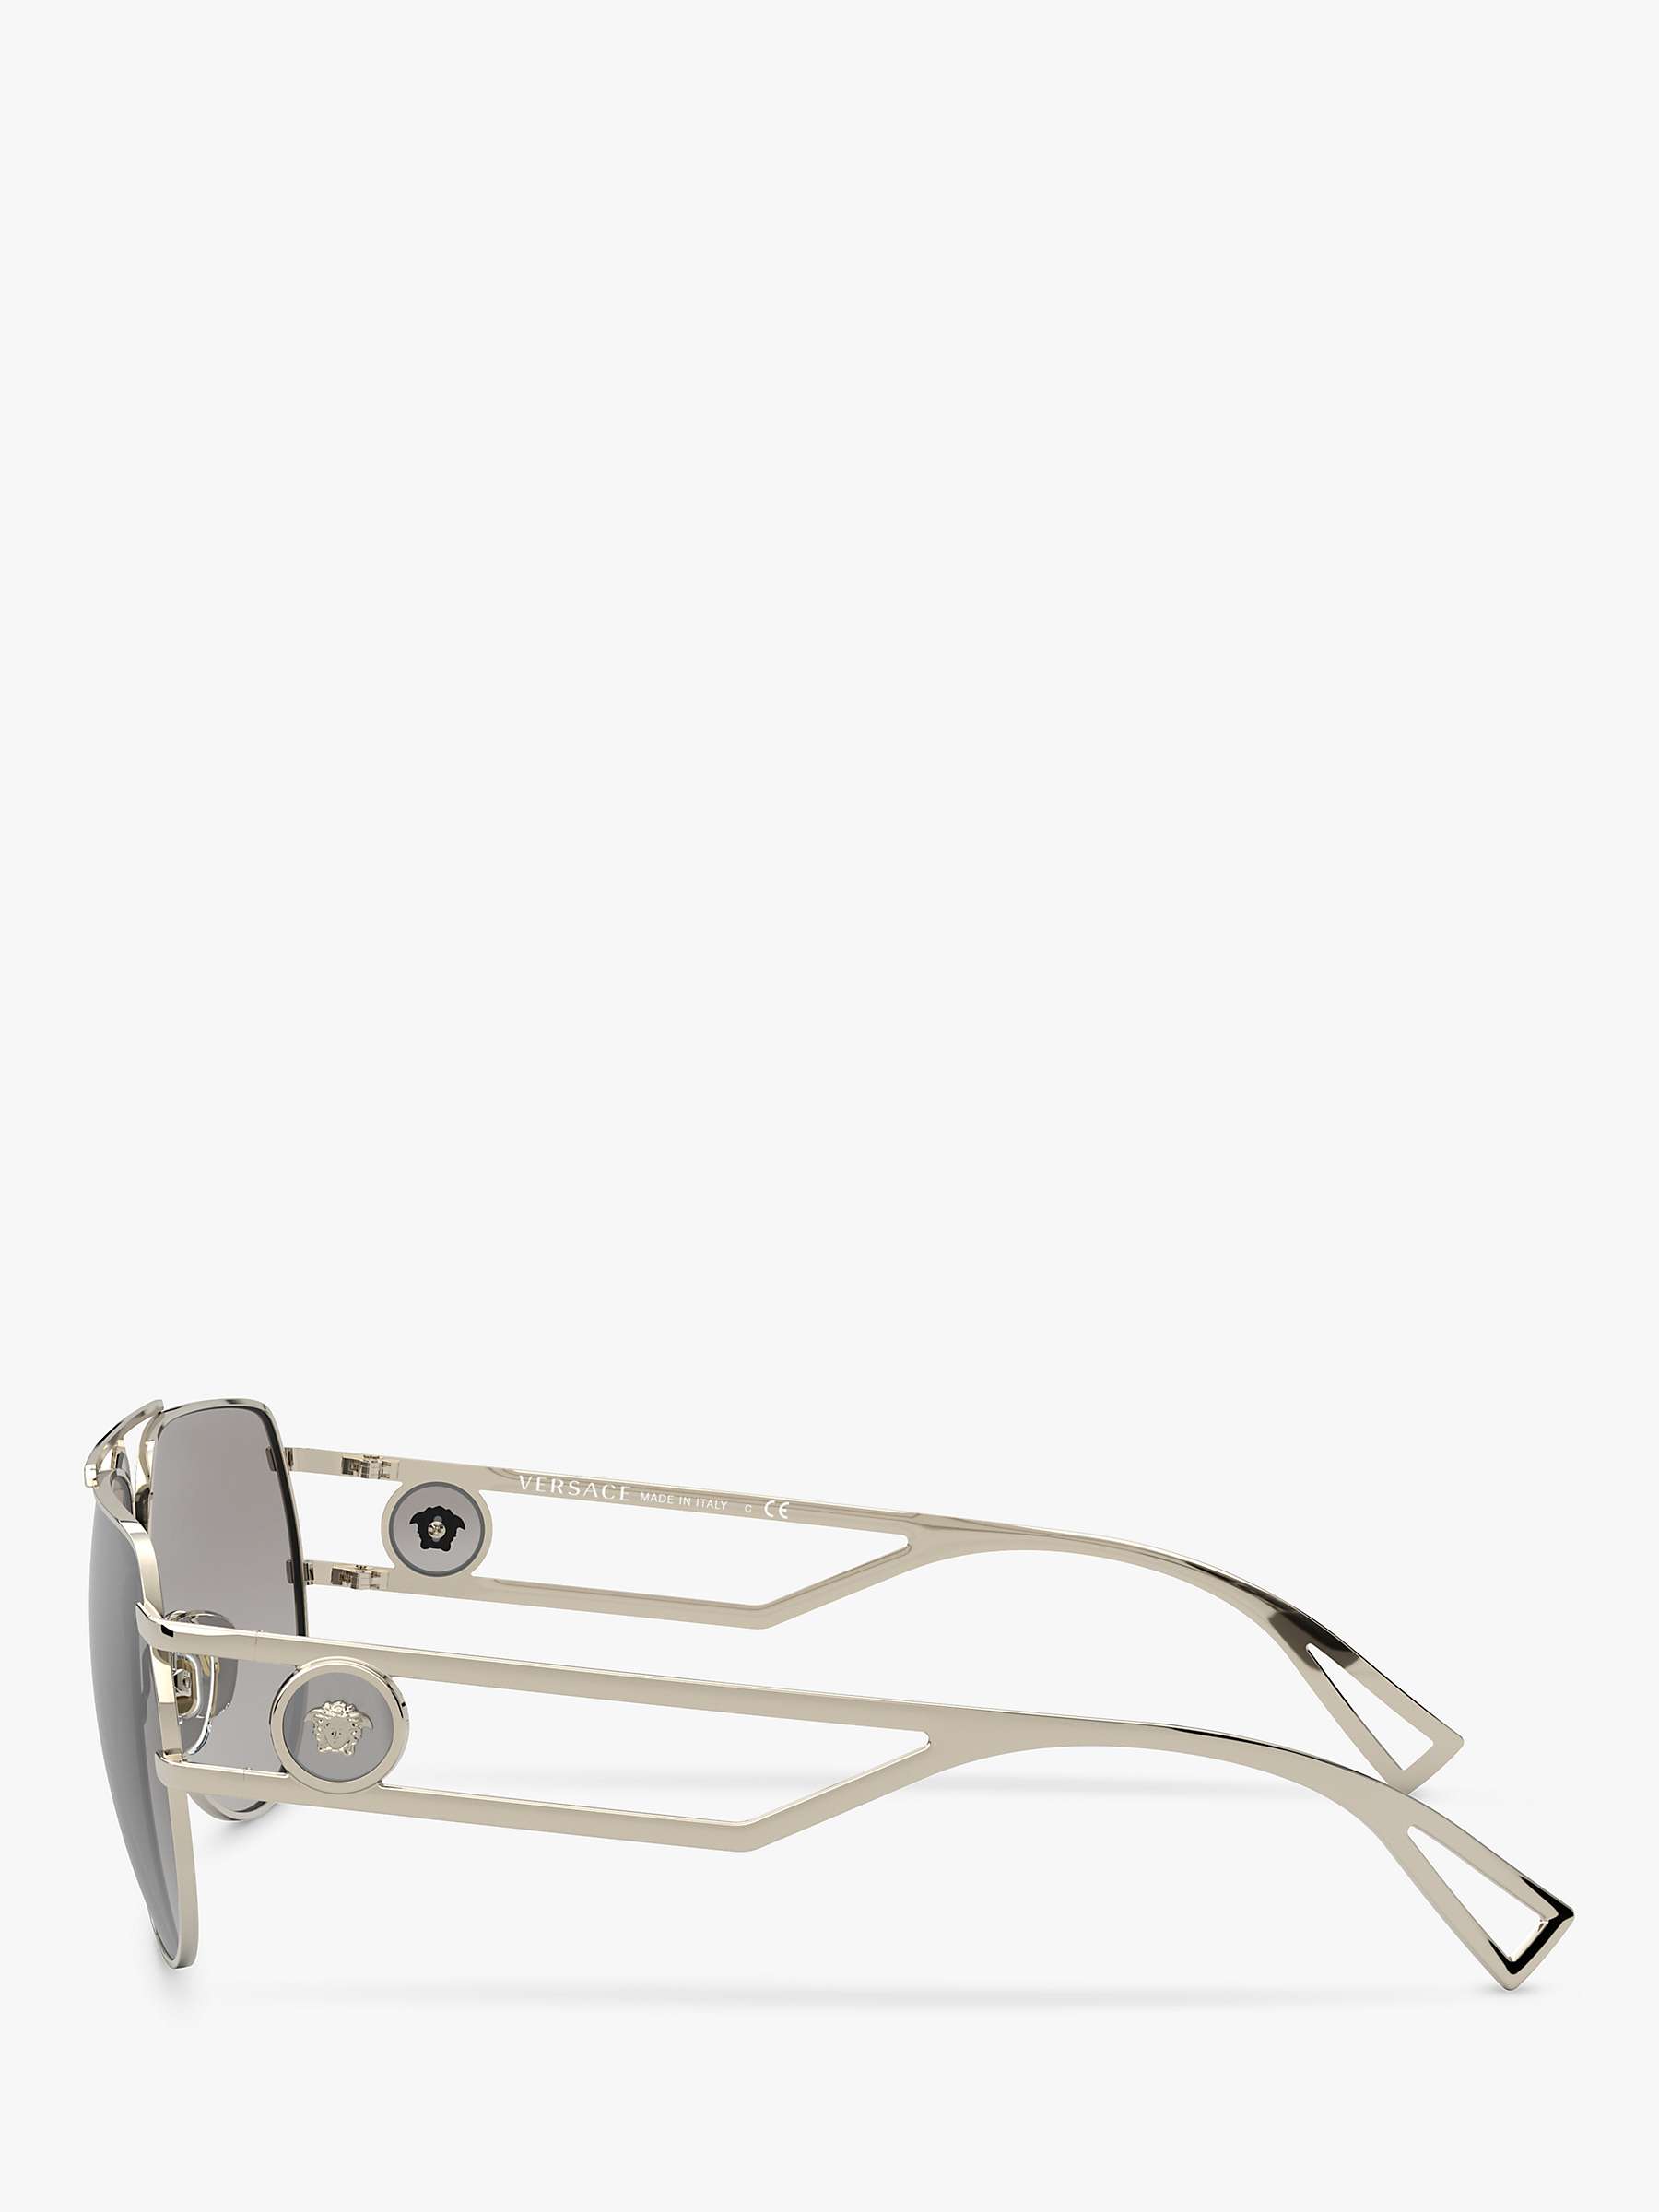 Buy Versace VE2225 Men's Pilot Sunglasses, Pale Gold Online at johnlewis.com